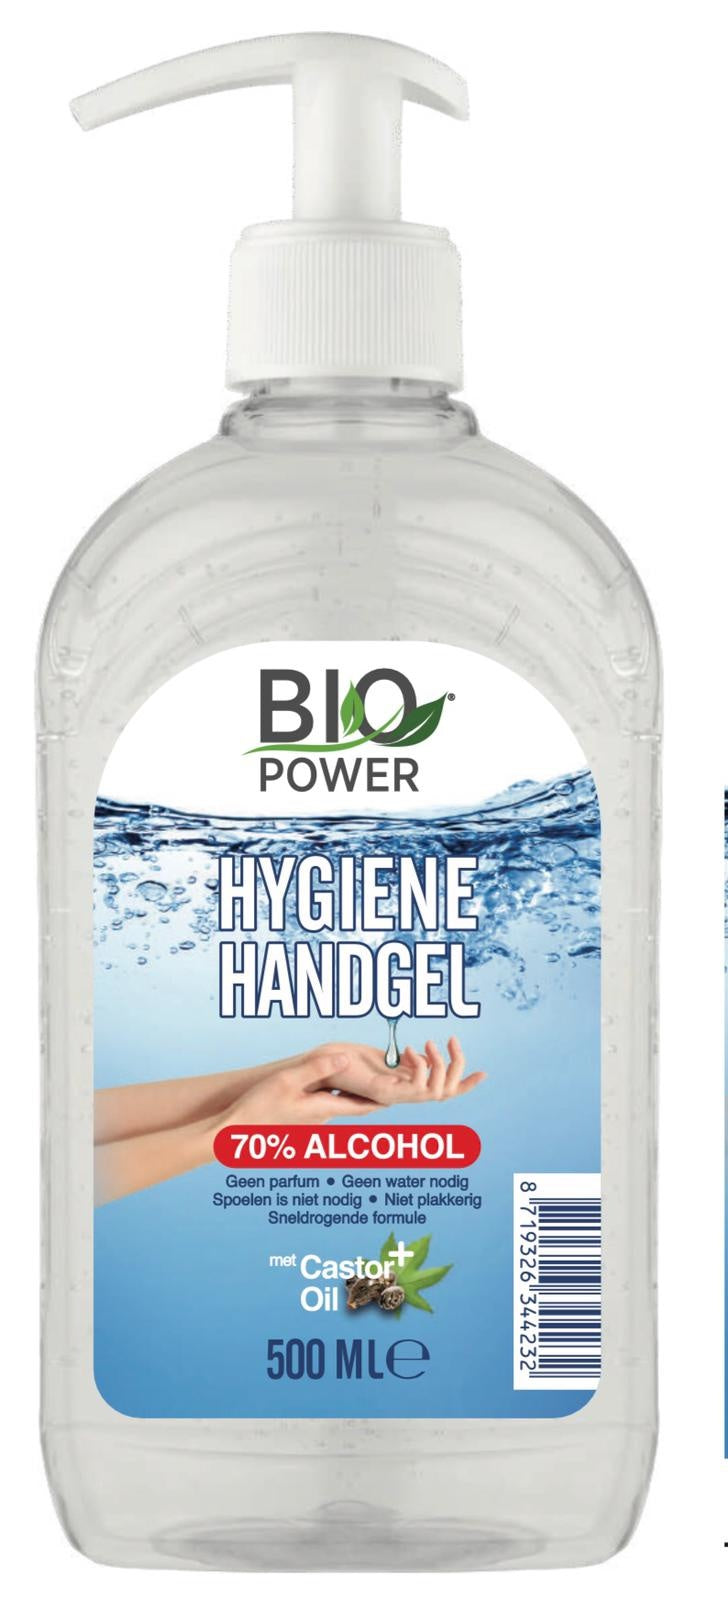 Biopower Handgel Met Pompje 500 Ml 70% Alcohol